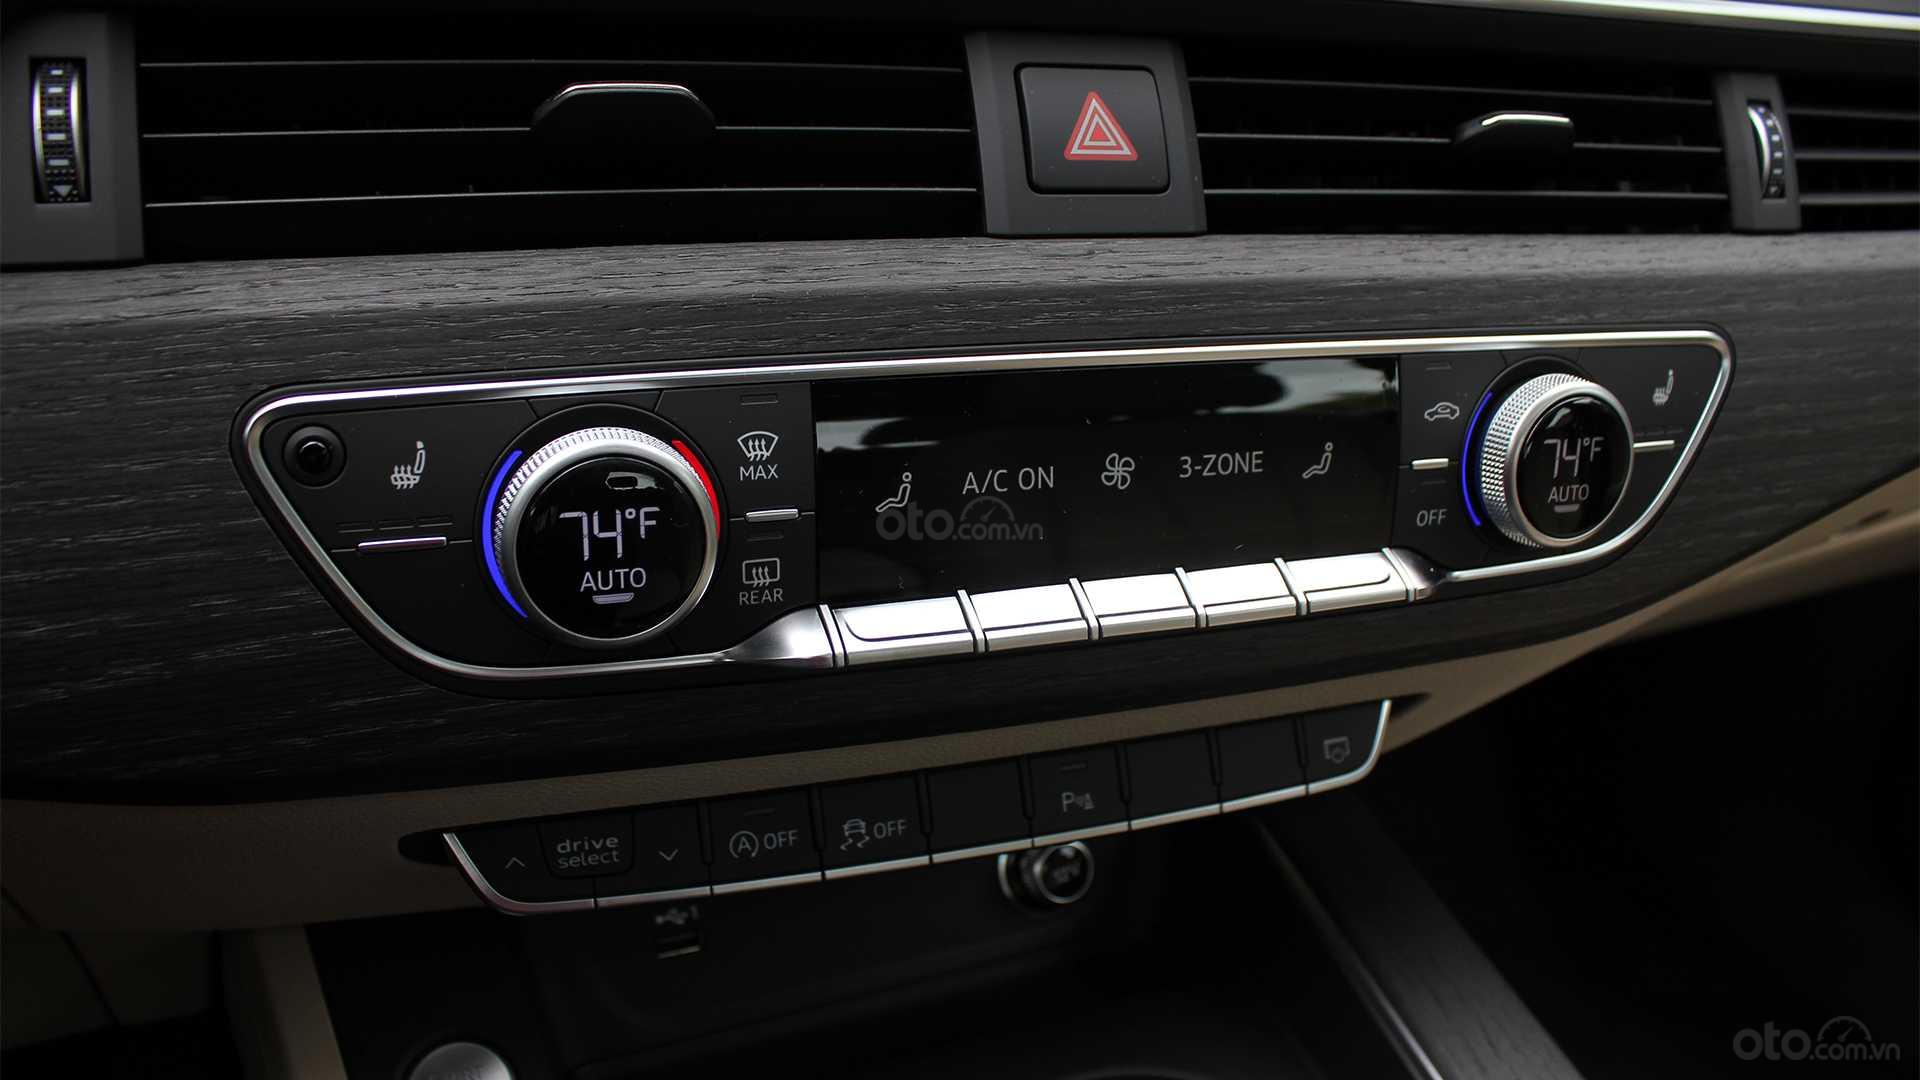 Đánh giá xe Audi A5 2019 - điều khiển nhiệt độ